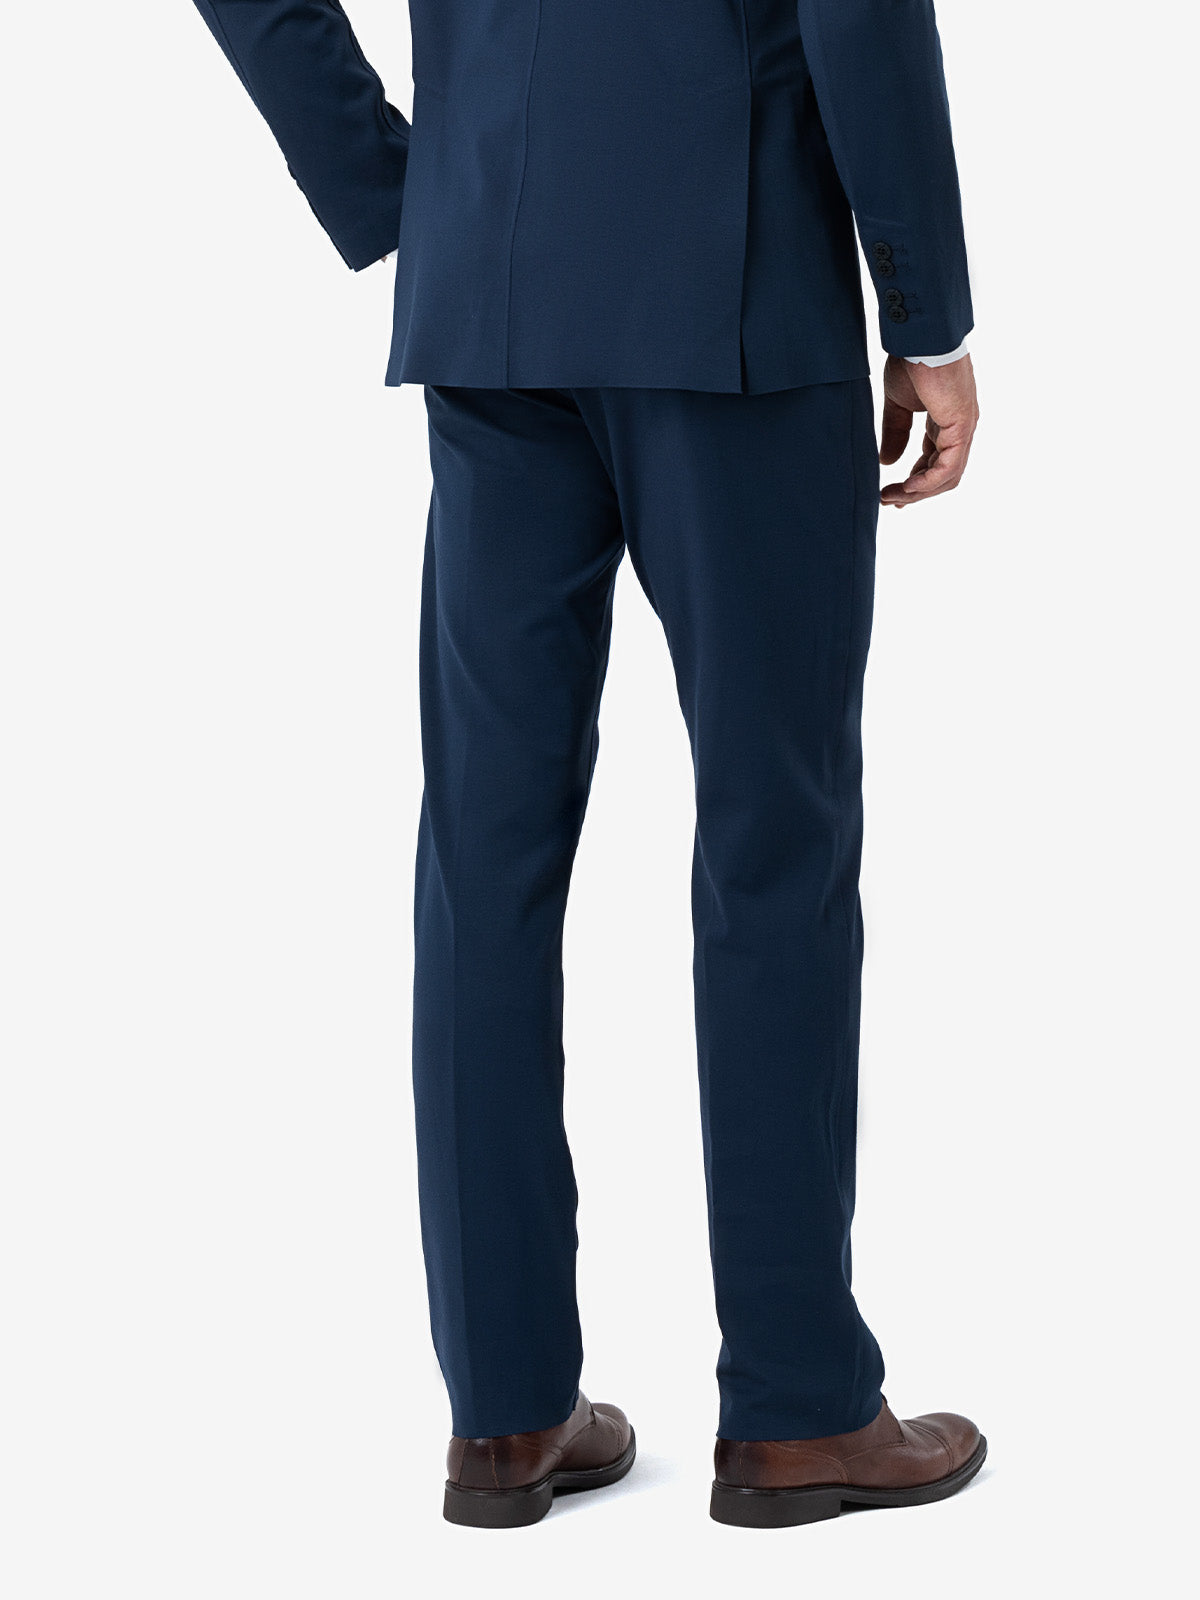 Navy blue suit pants